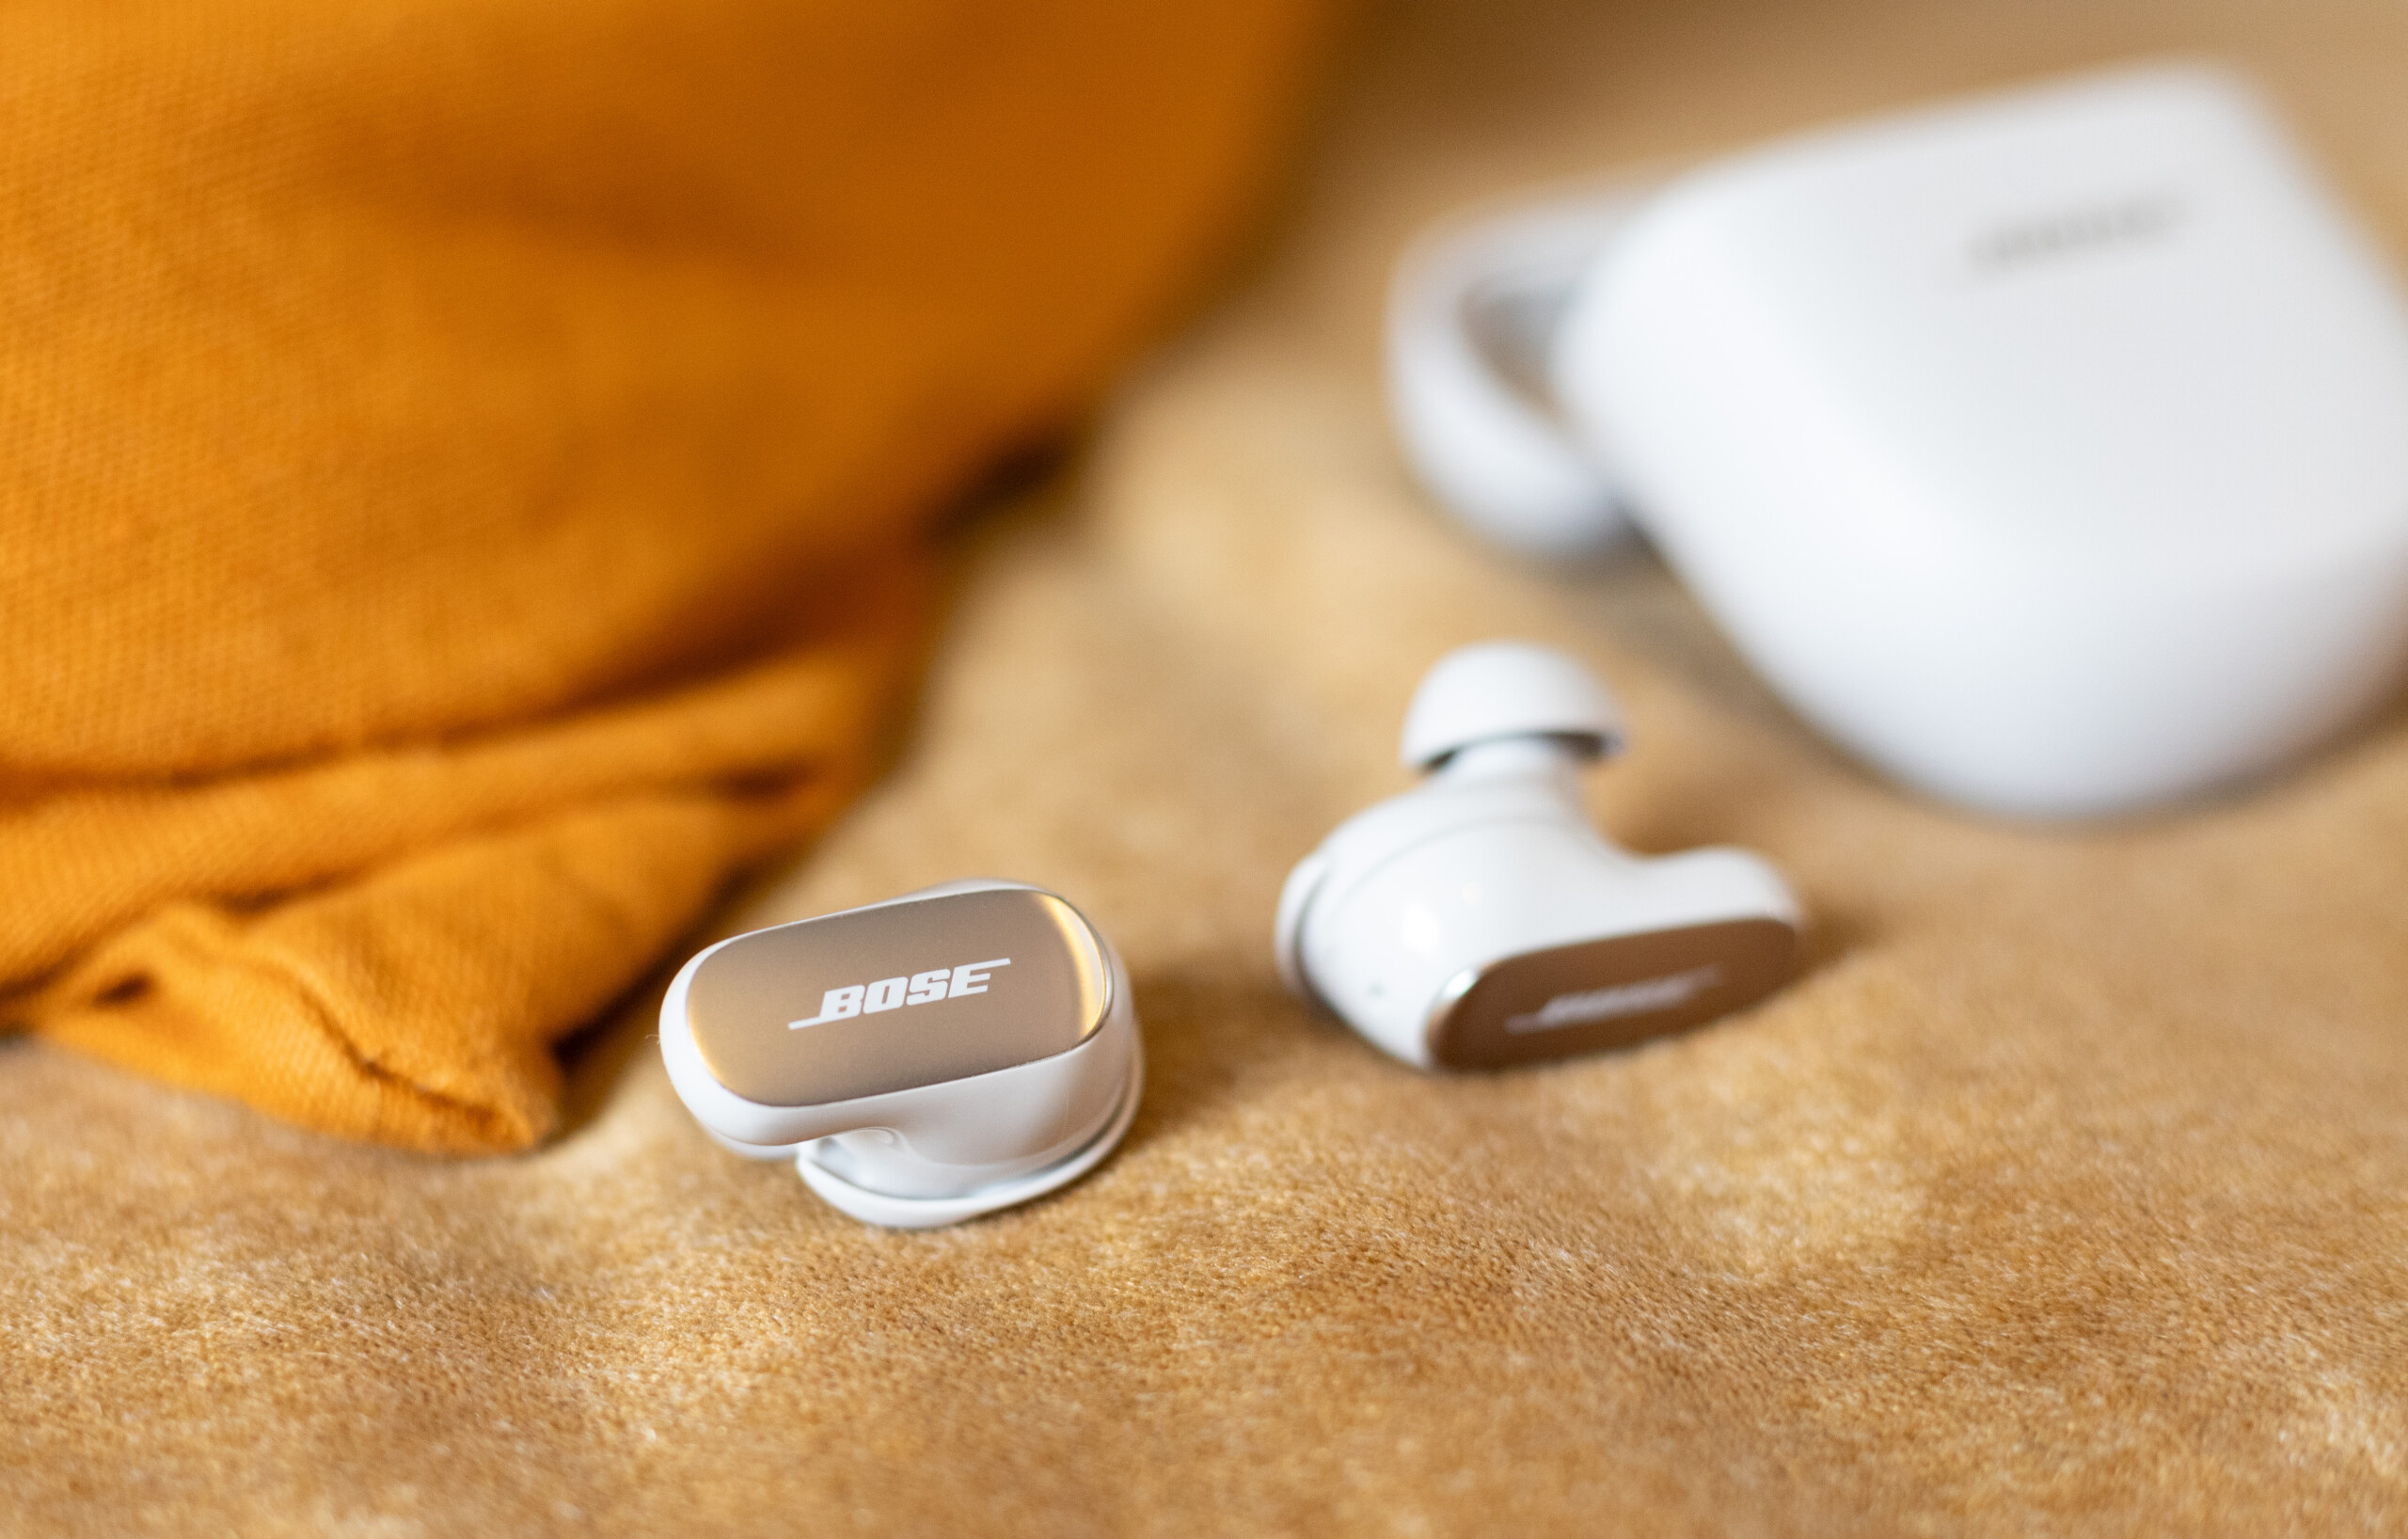 Les futurs casque et écouteurs de Bose profiteraient de l'audio